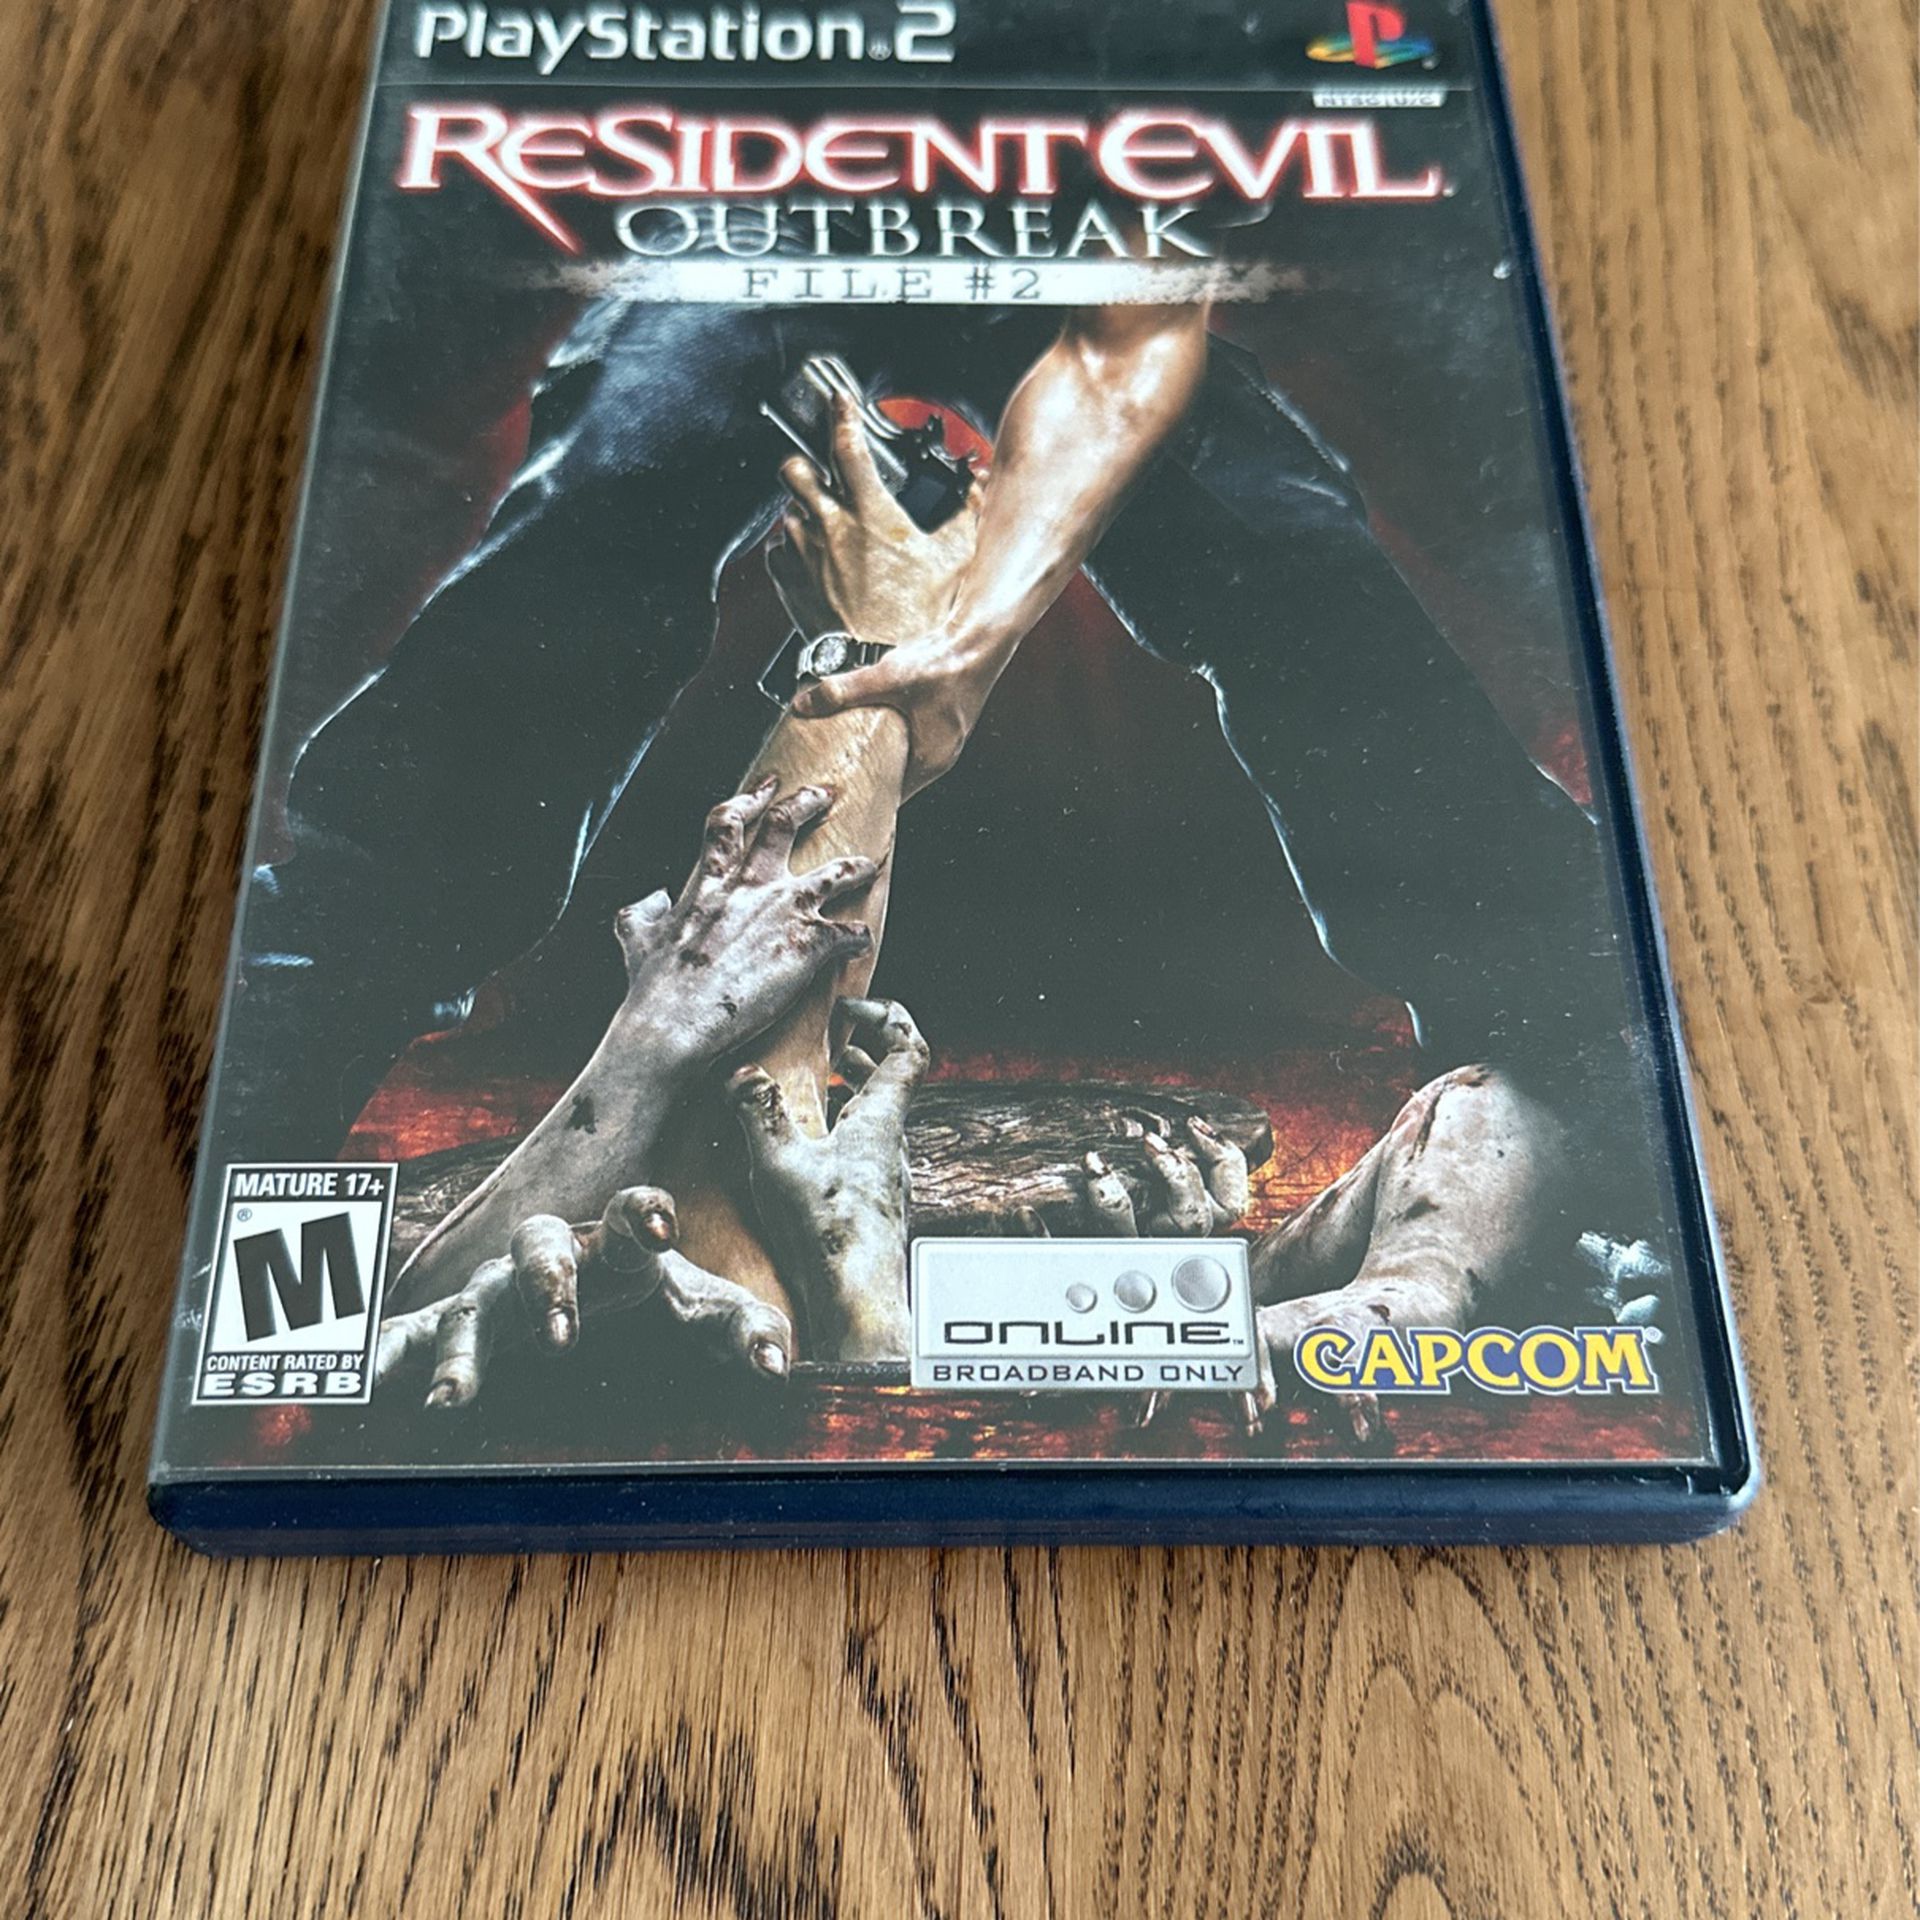 Resident Evil Outbreak File 2 (PS2)